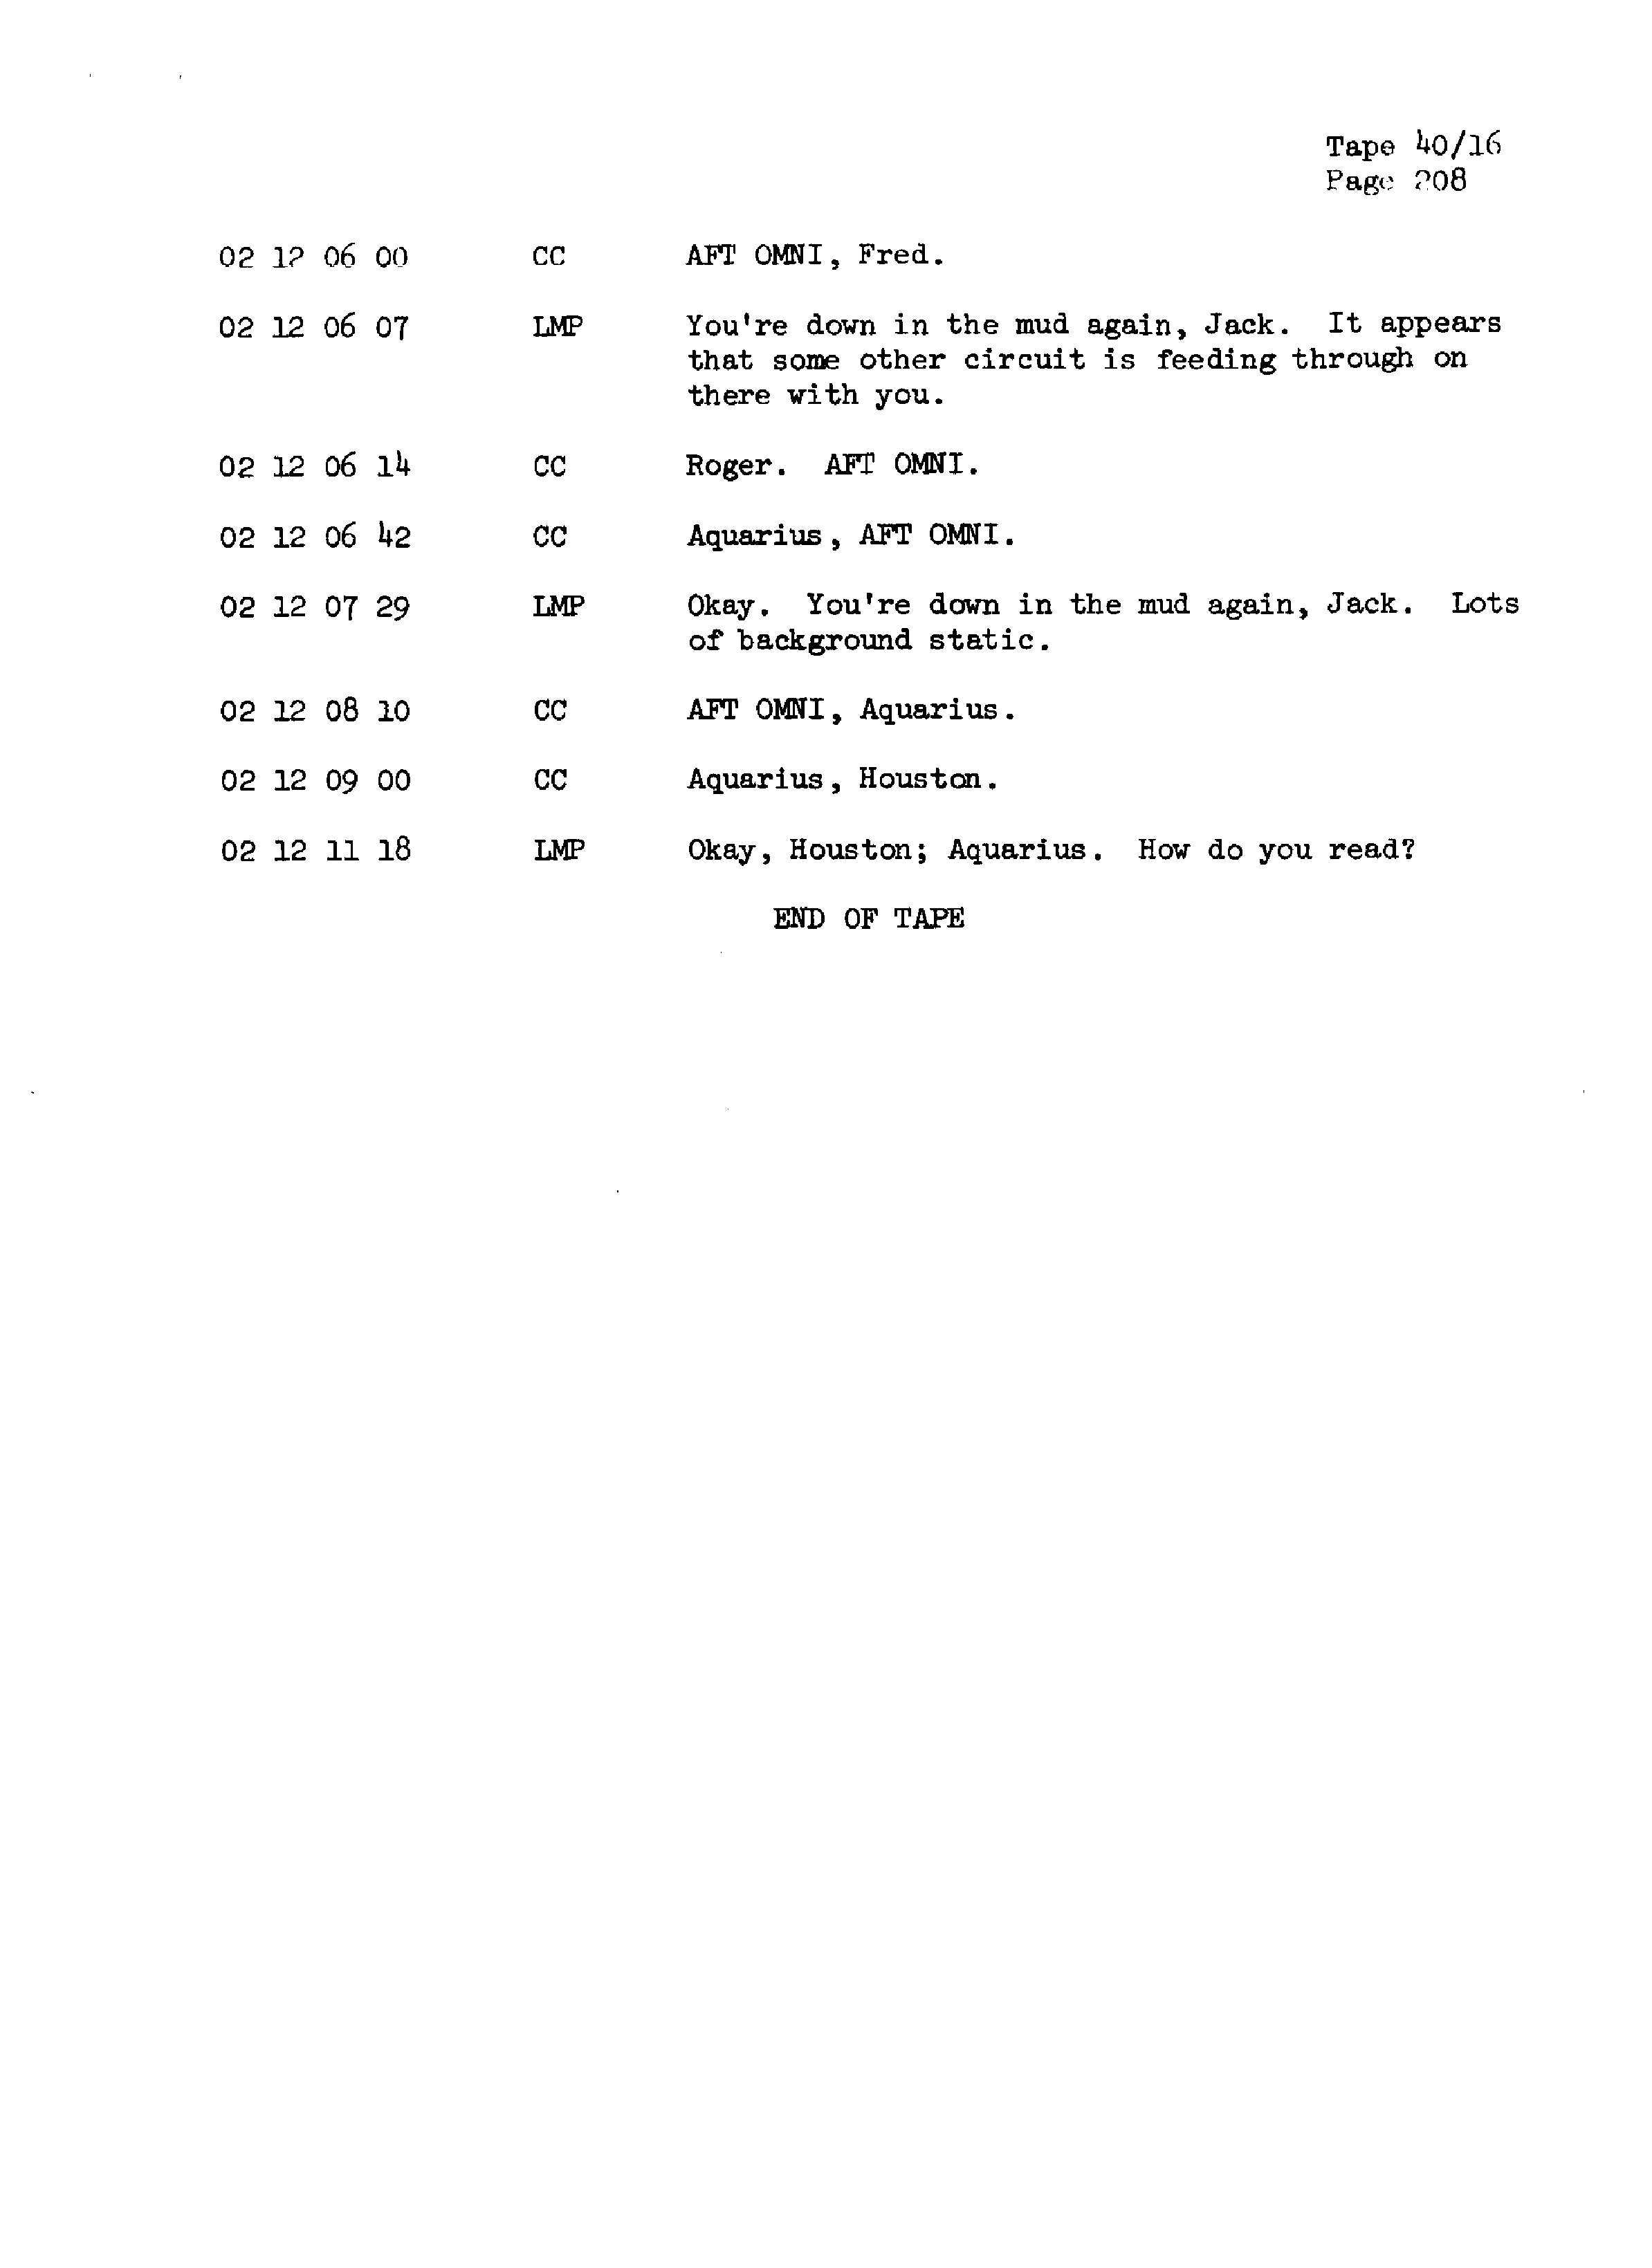 Page 215 of Apollo 13’s original transcript